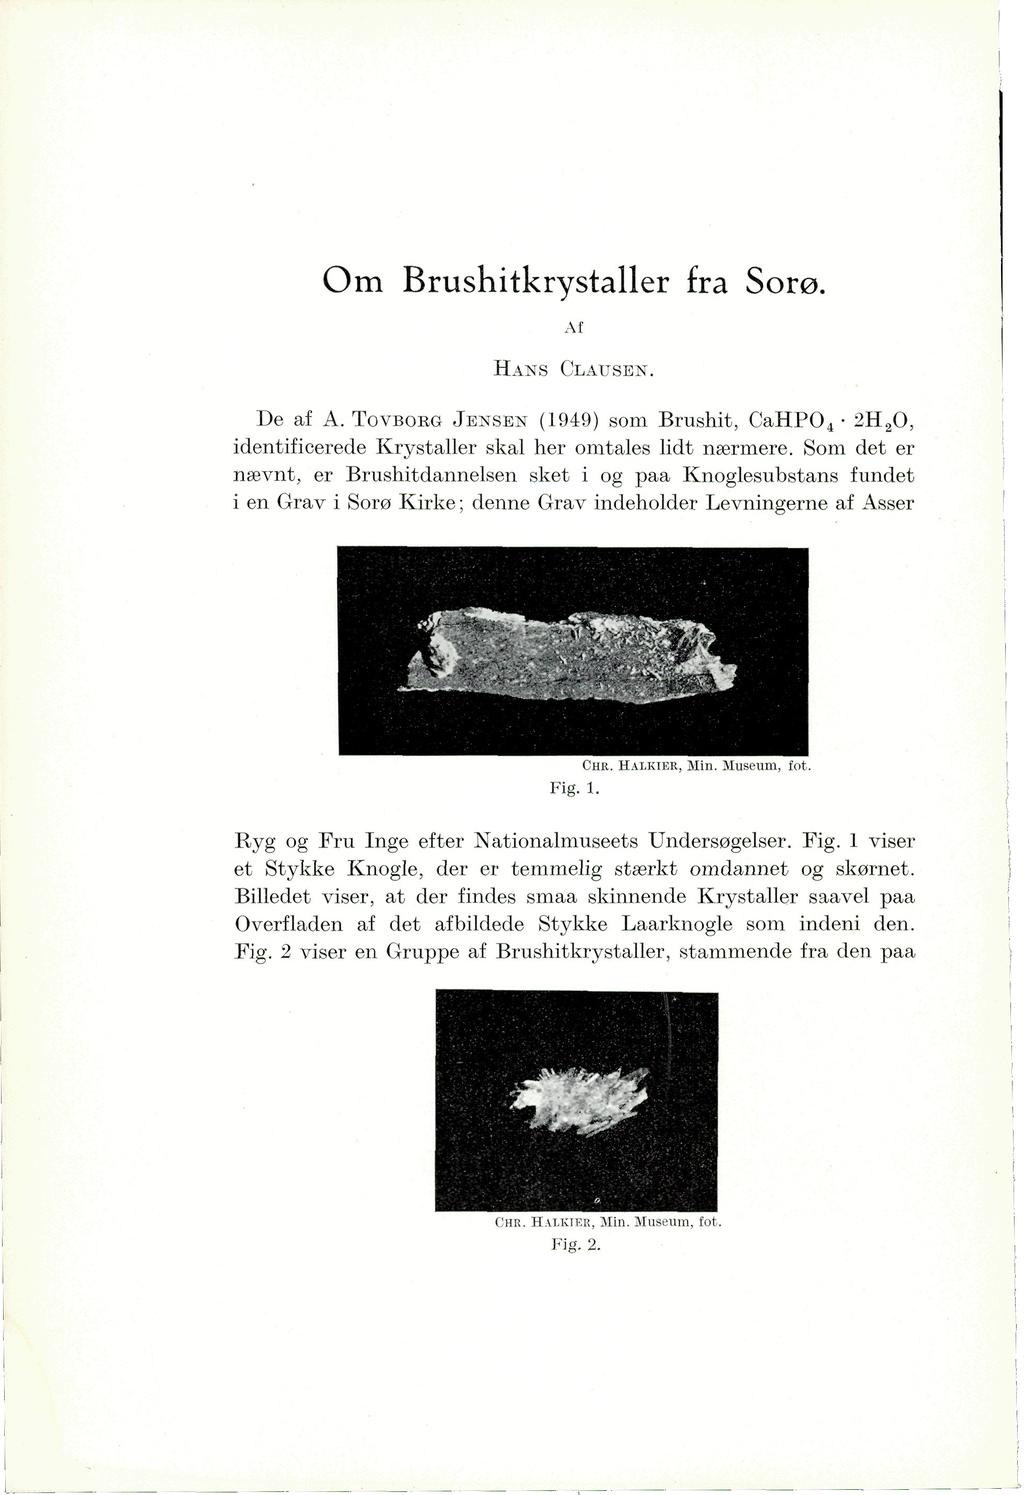 Om Brushitkrystaller fra Sorø. Af HANS CLAUSEN. De af A. TOVBOEG JENSEN (1949) som Brushit, CaHPO 4 2H 2 O, identificerede Krystaller skal her omtales lidt nærmere.